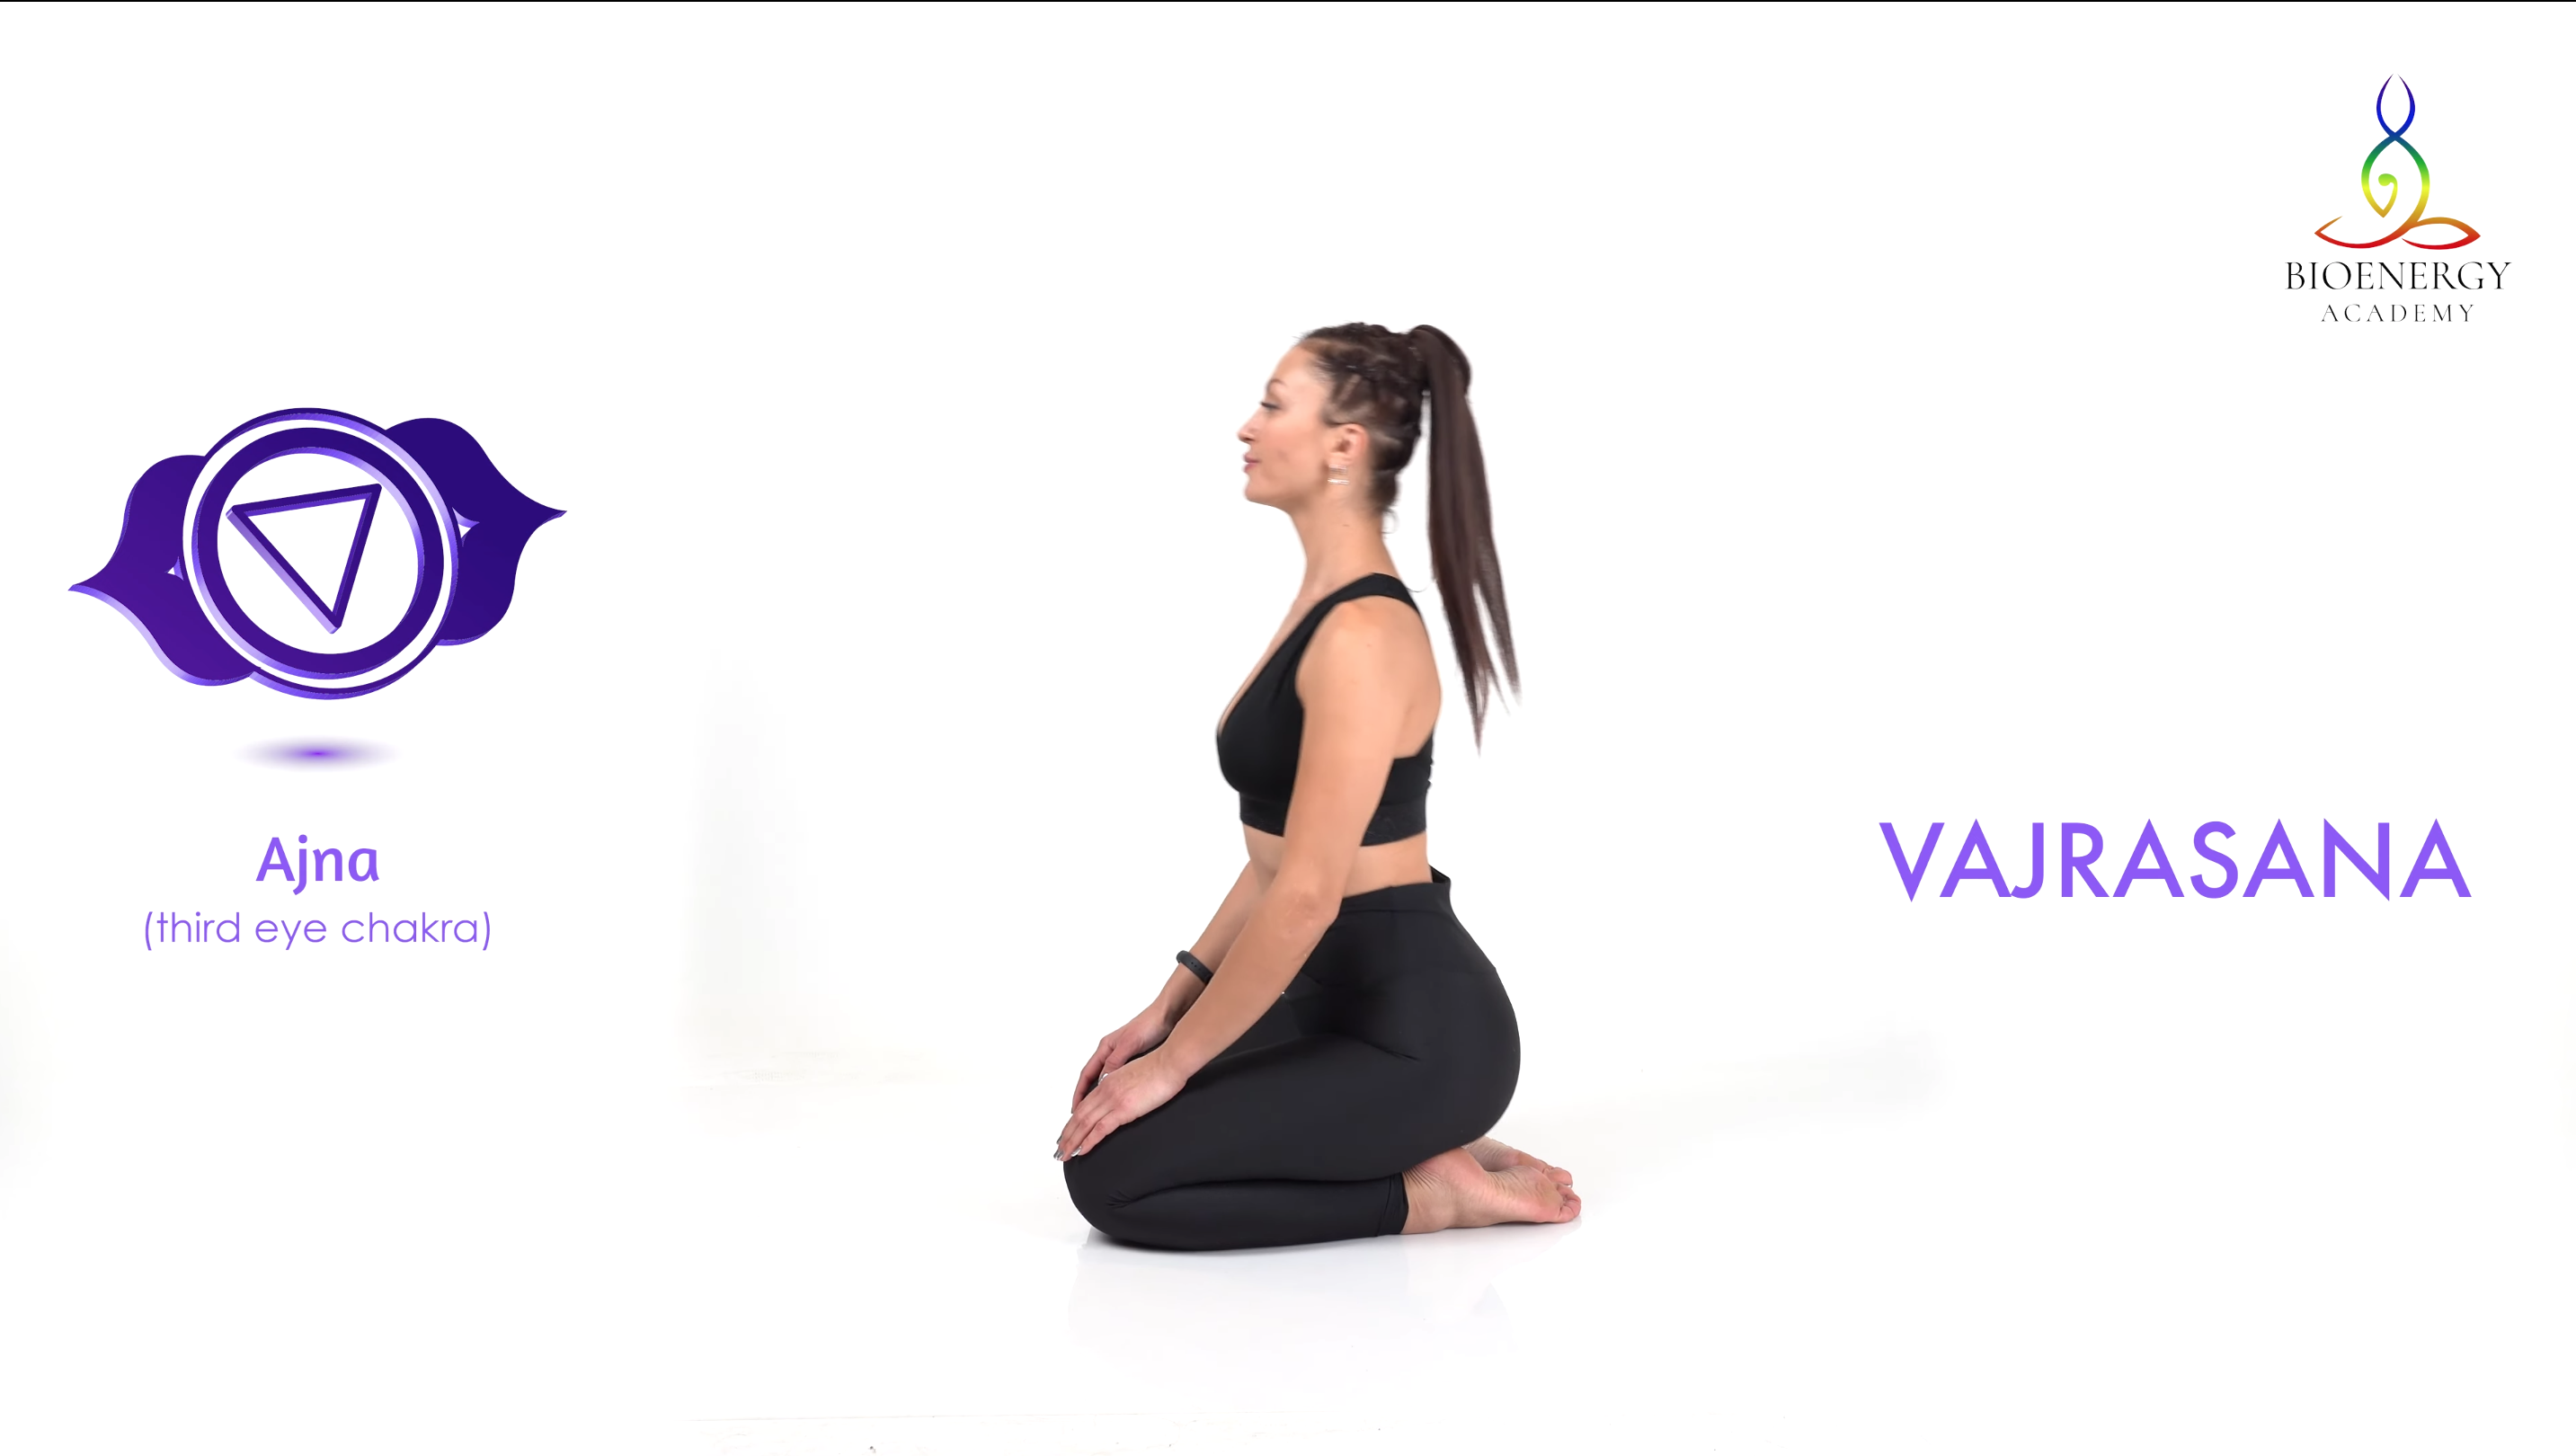 Ajna / Third Eye Chakra / Yoga Poses to Balance Your Third Eye Chakra